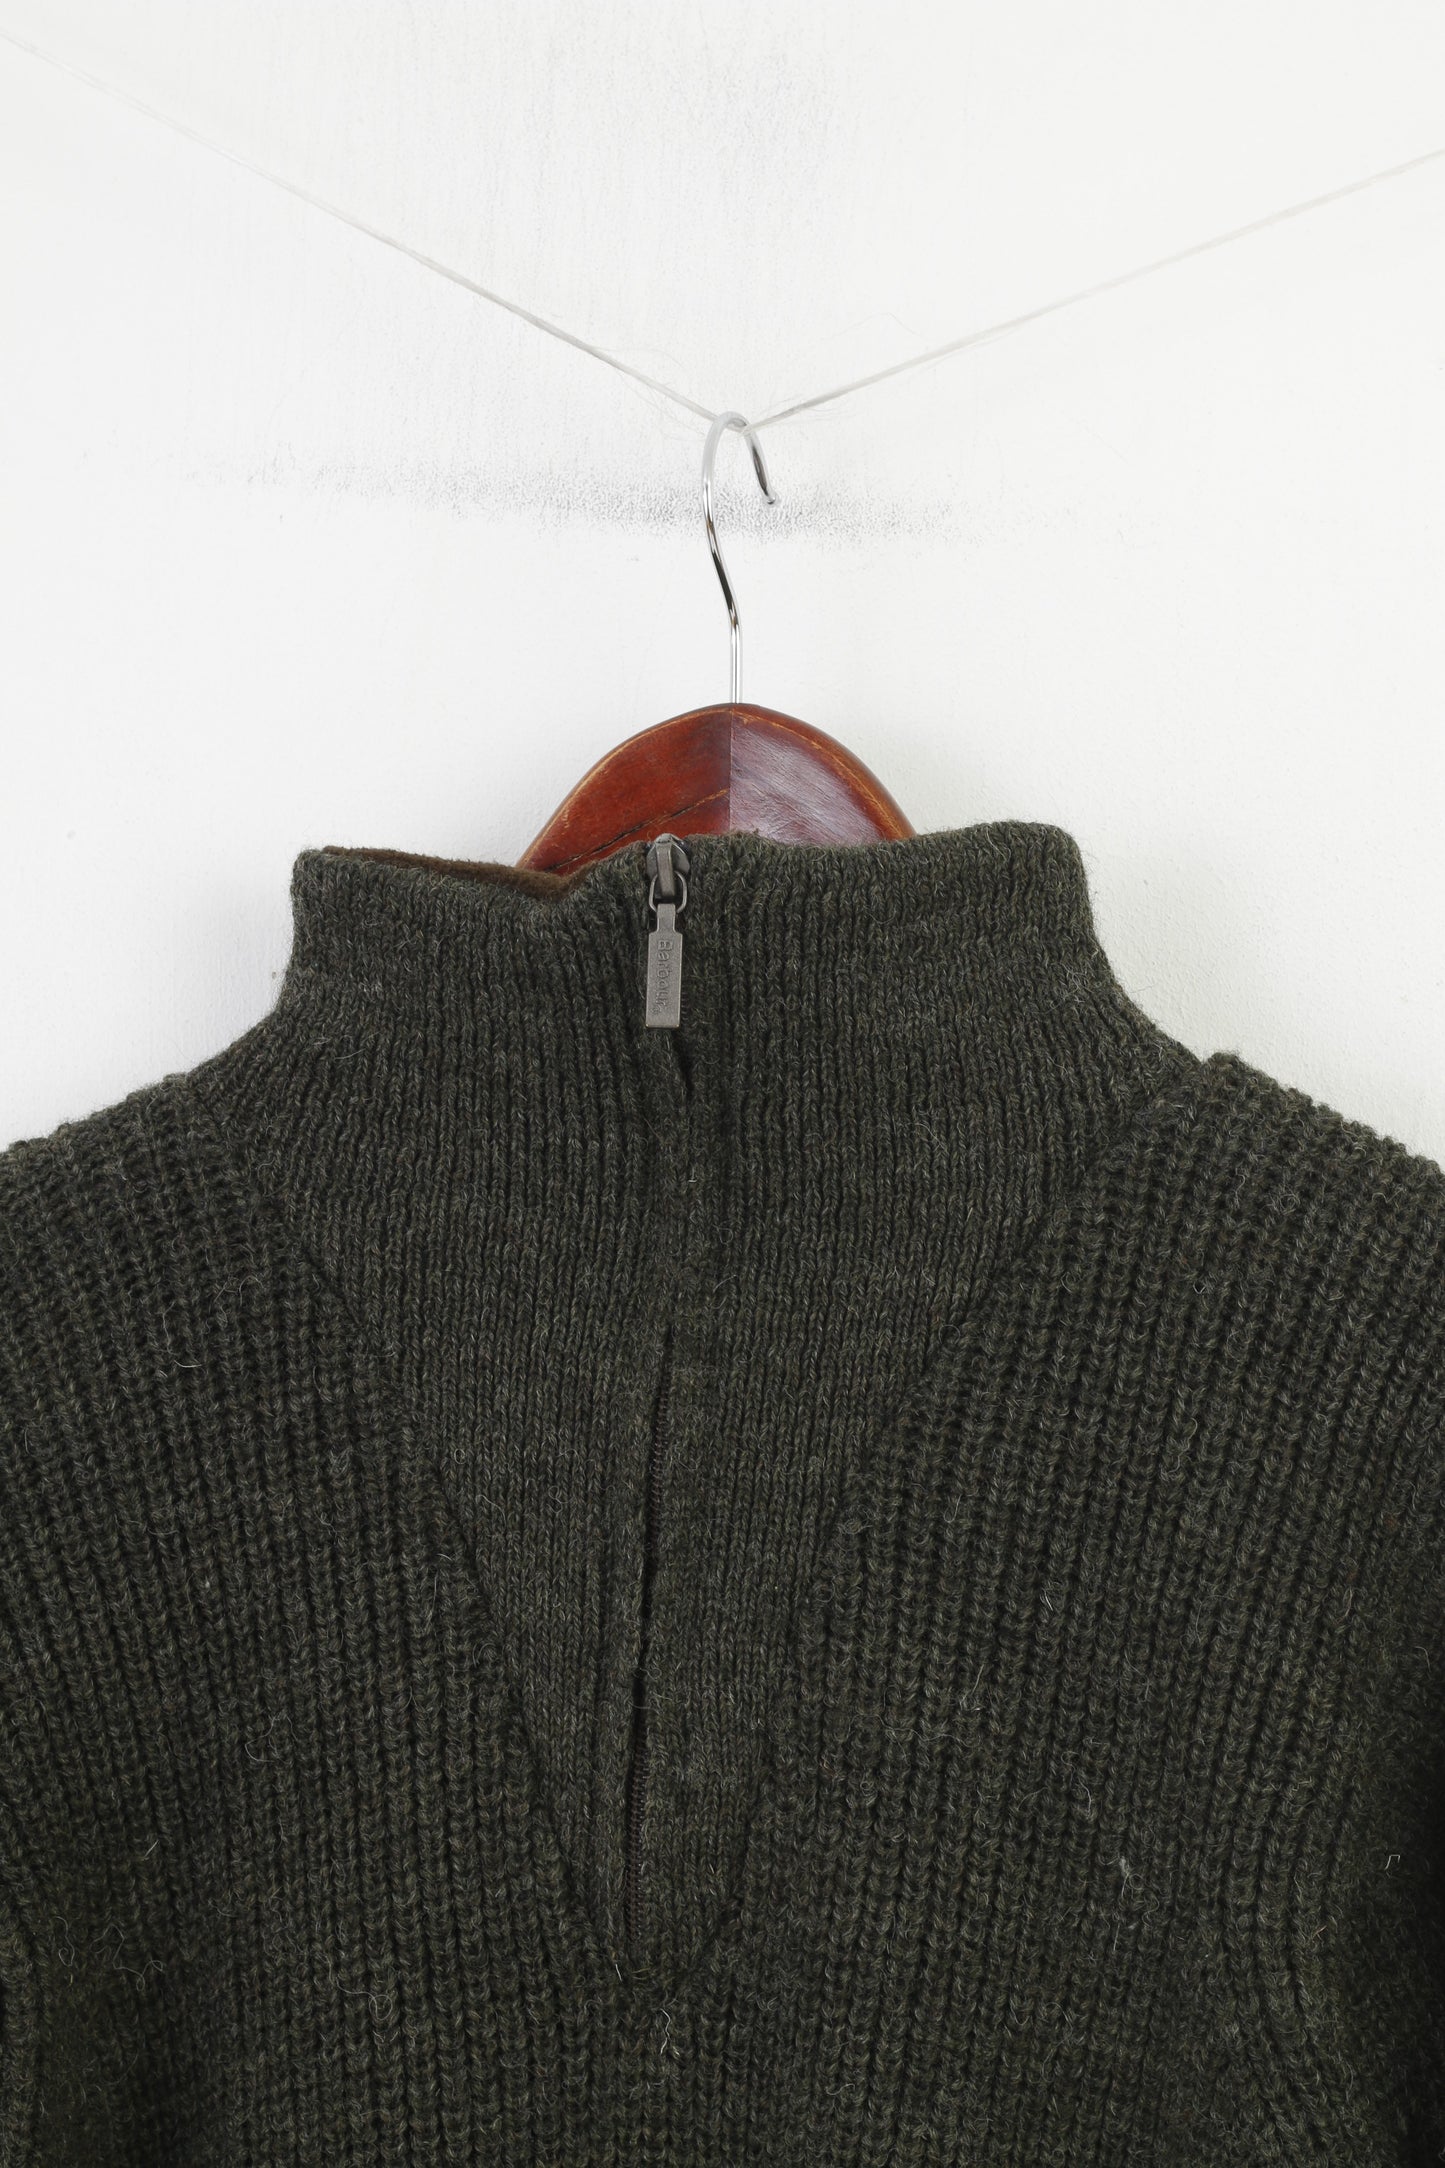 Barbour Uomo S Maglione con zip collo verde colletto in lana Vintage Scozia Top